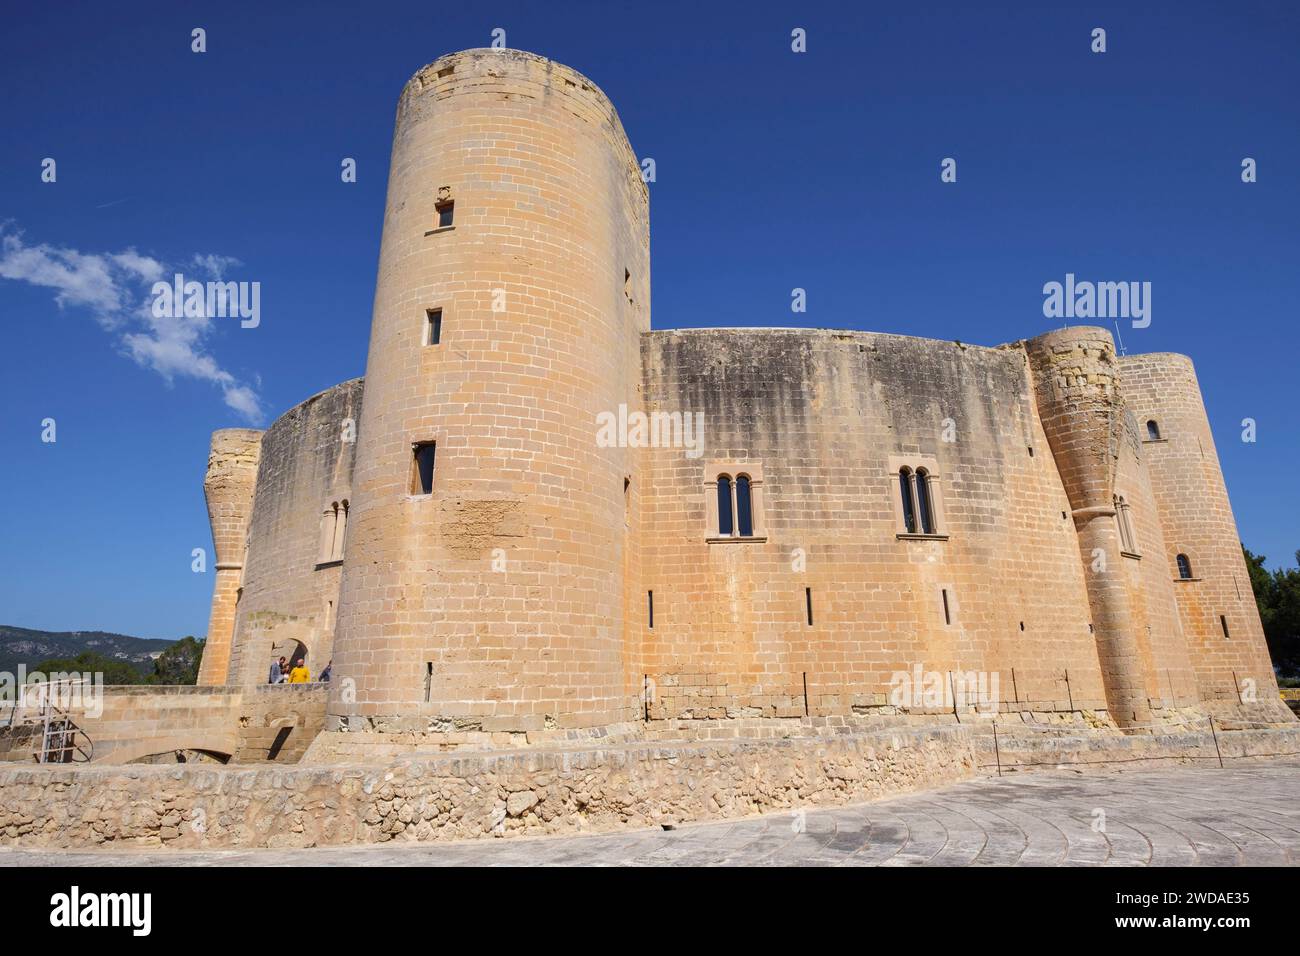 castillo de Bellver, siglo XIV, estilo gótico, Mallorca, balearic islands, Spain Stock Photo